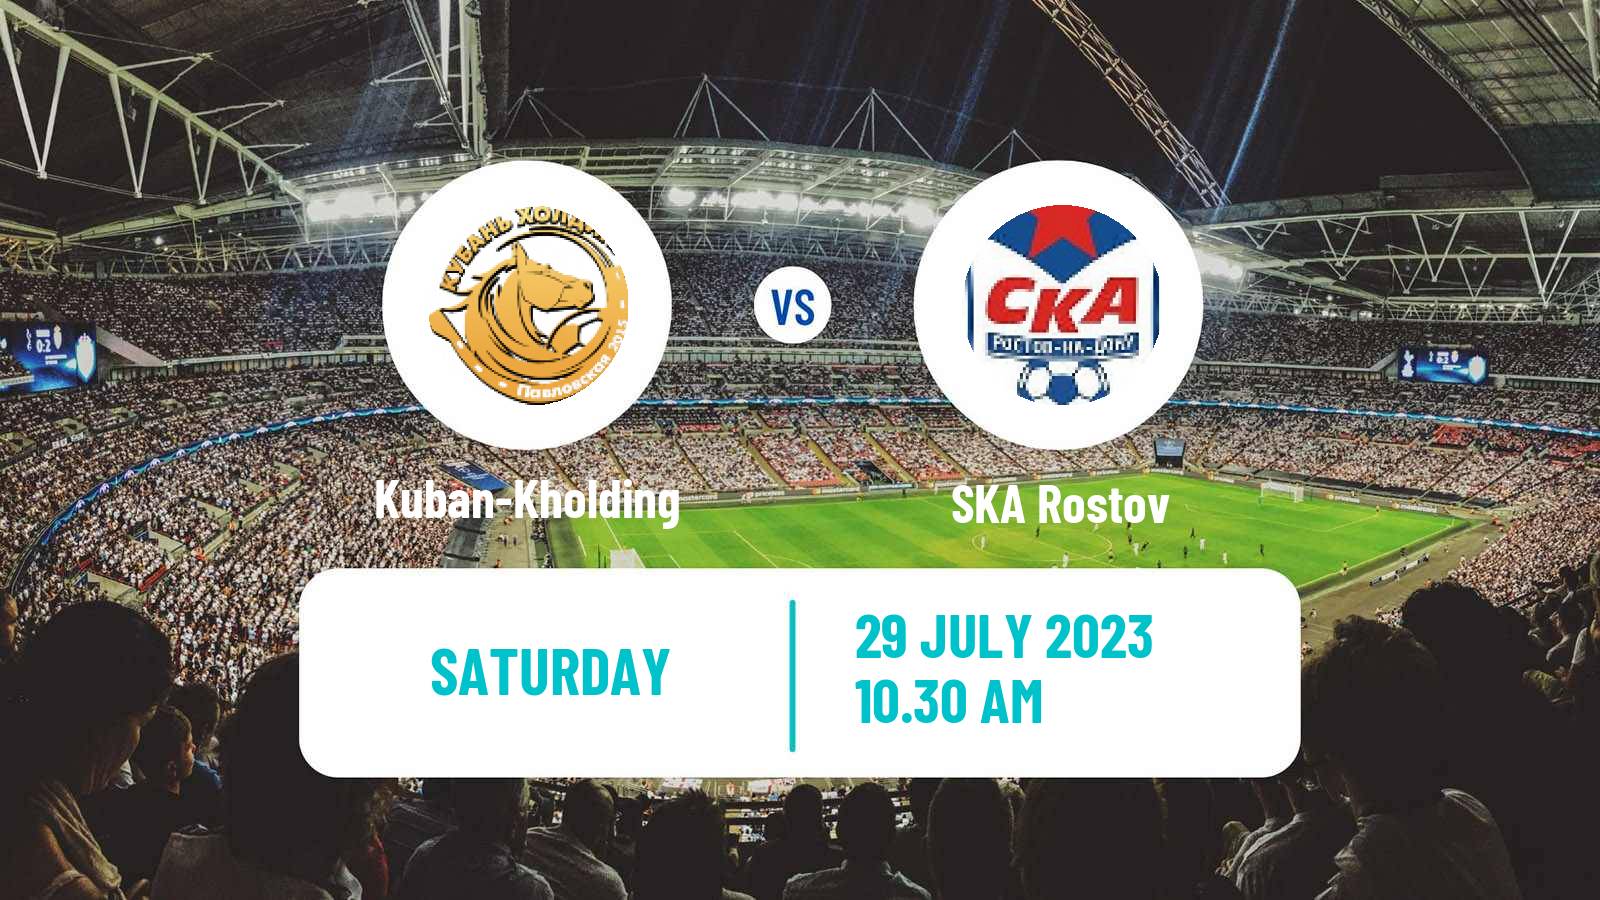 Soccer FNL 2 Division B Group 1 Kuban-Kholding - SKA Rostov